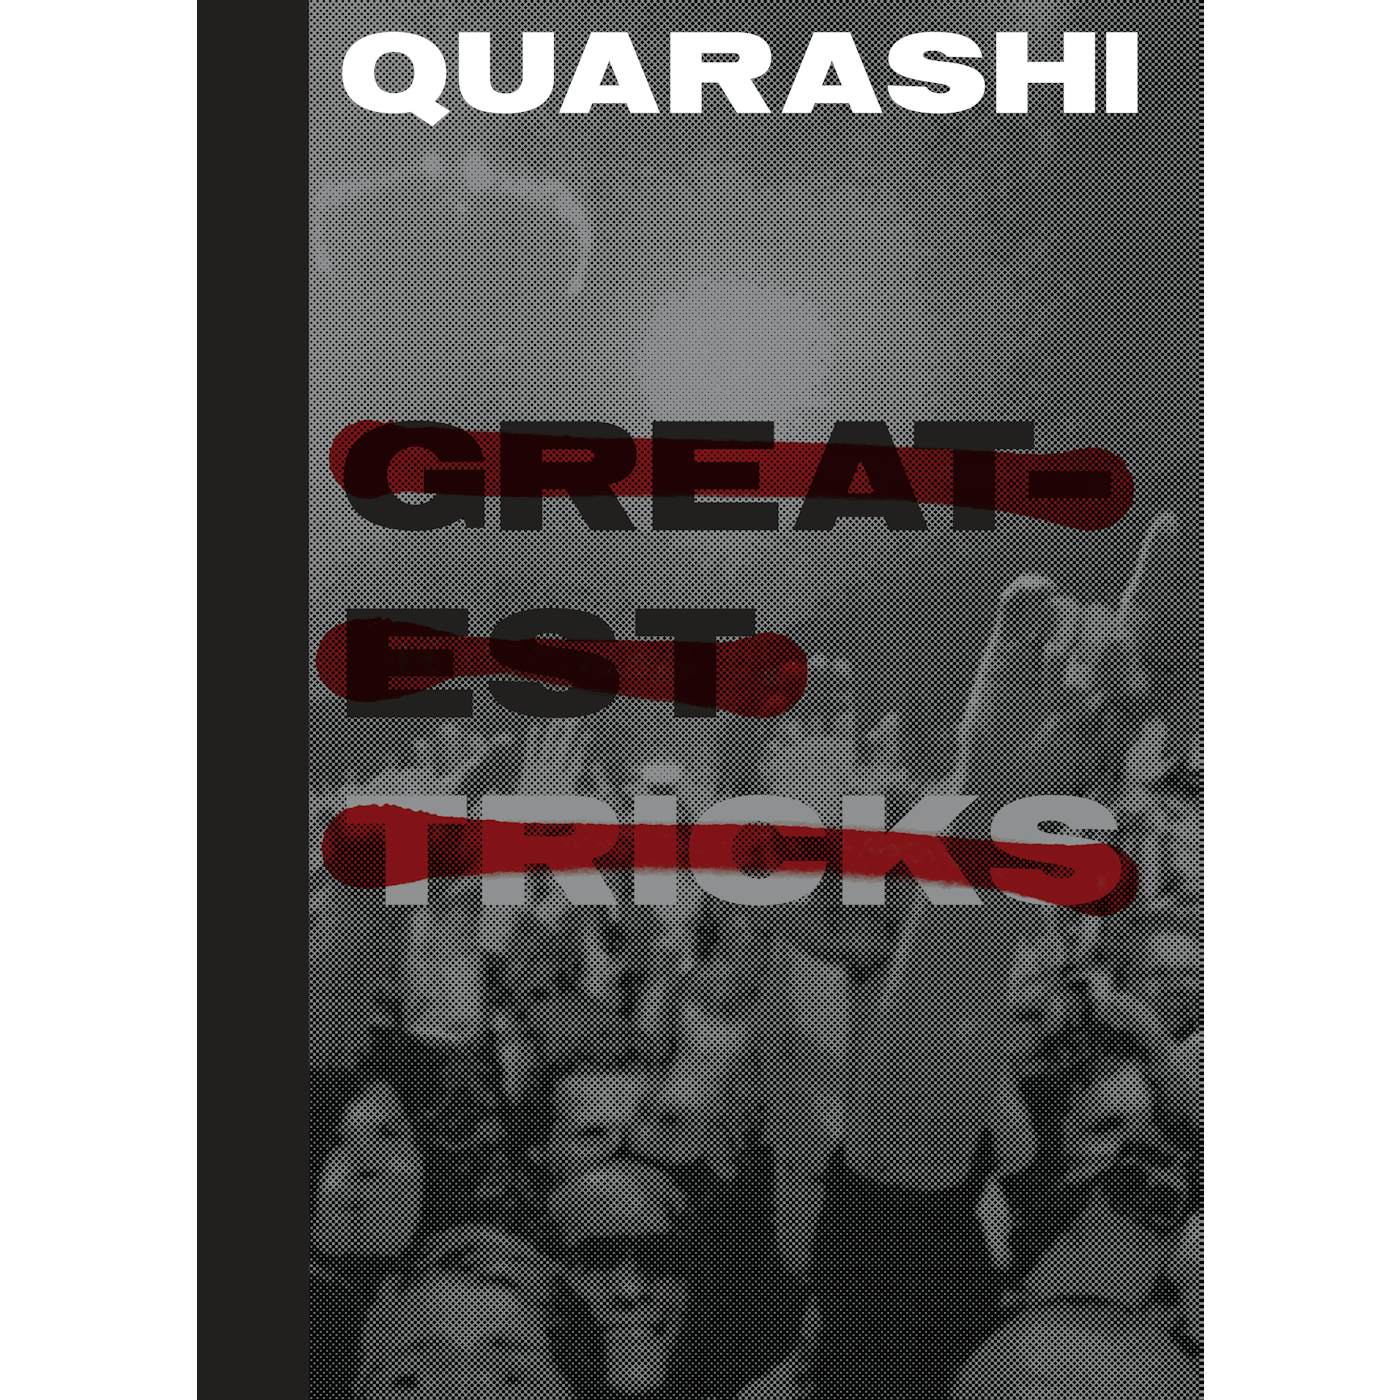 Quarashi - Greatest Tricks (A3 poster)